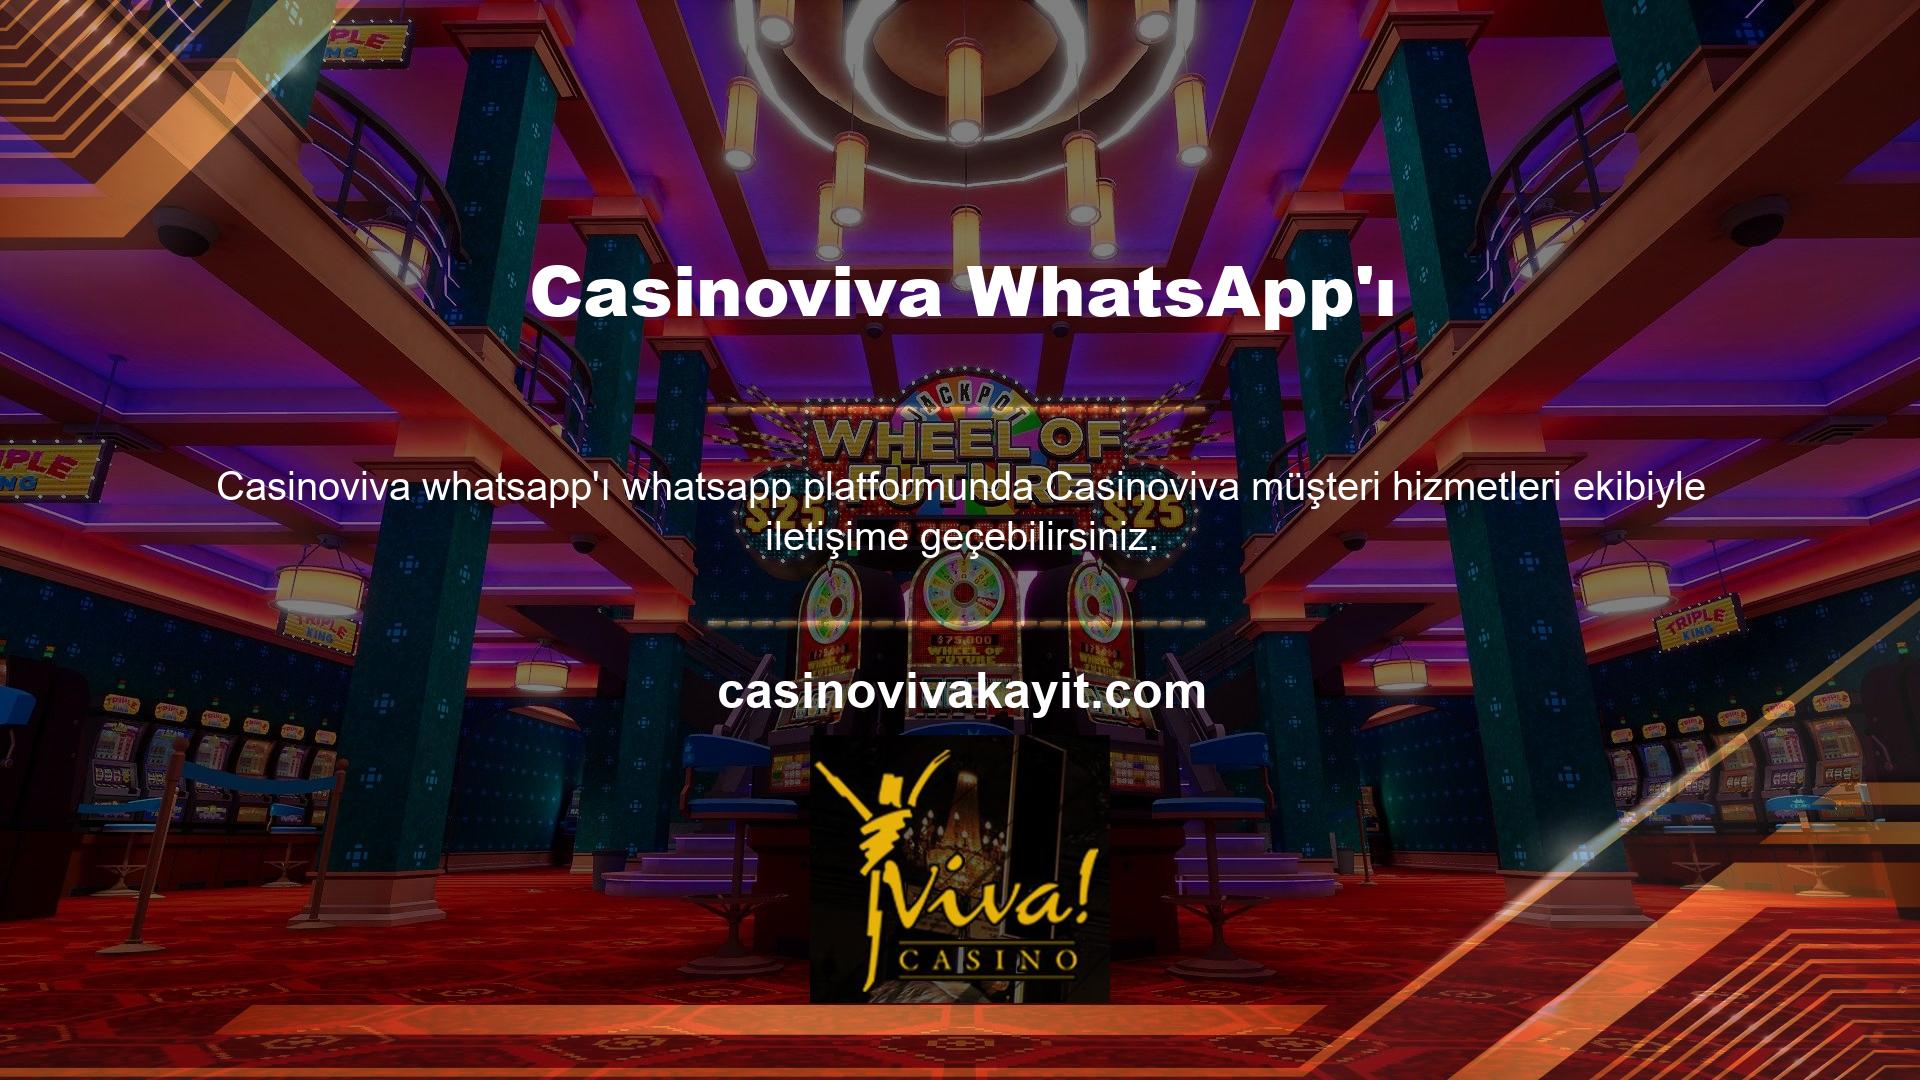 Casinoviva, resmi Twitter adresi ve sosyal medya platformları aracılığıyla tam iletişim desteği sağlar